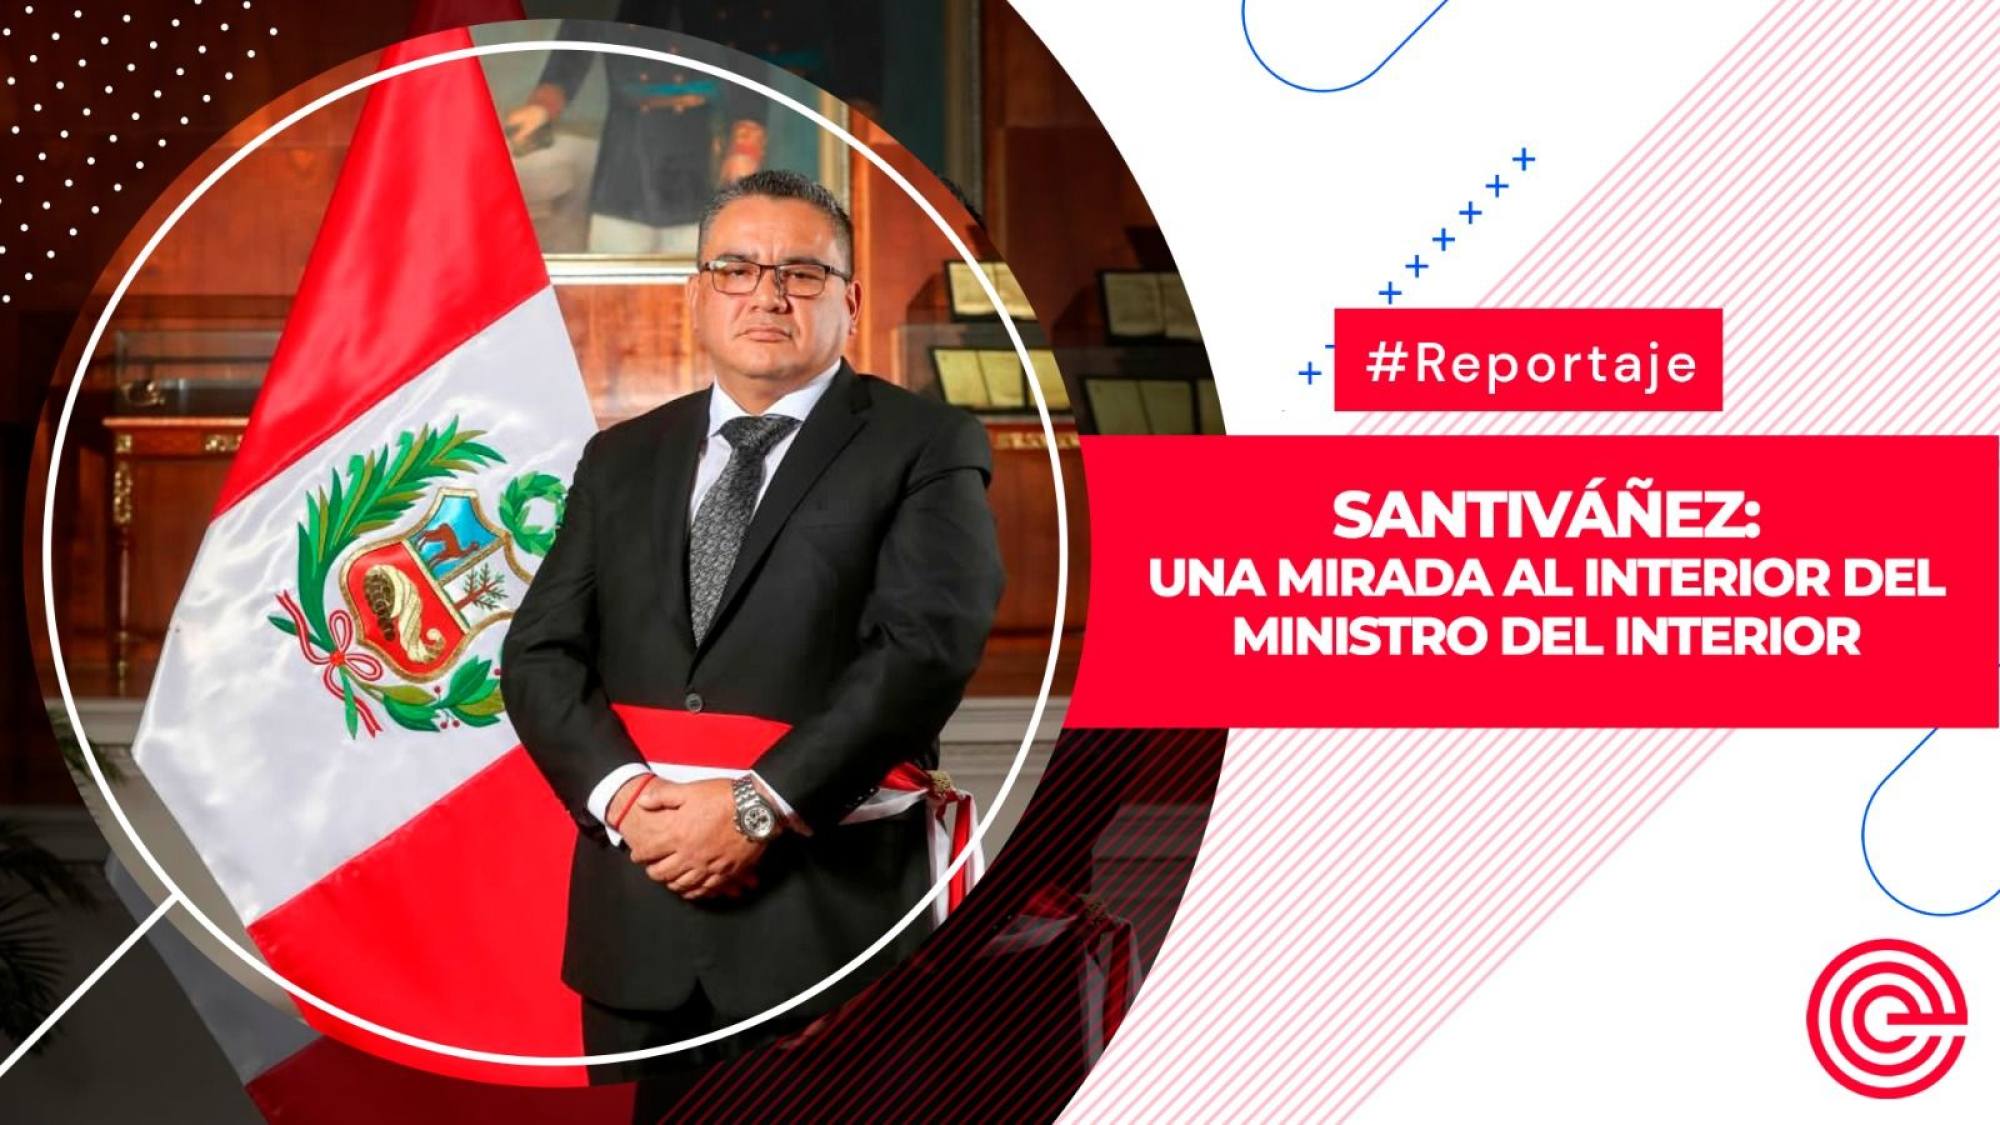 Santiváñez: una mirada al interior del ministro del Interior, Epicentro TV